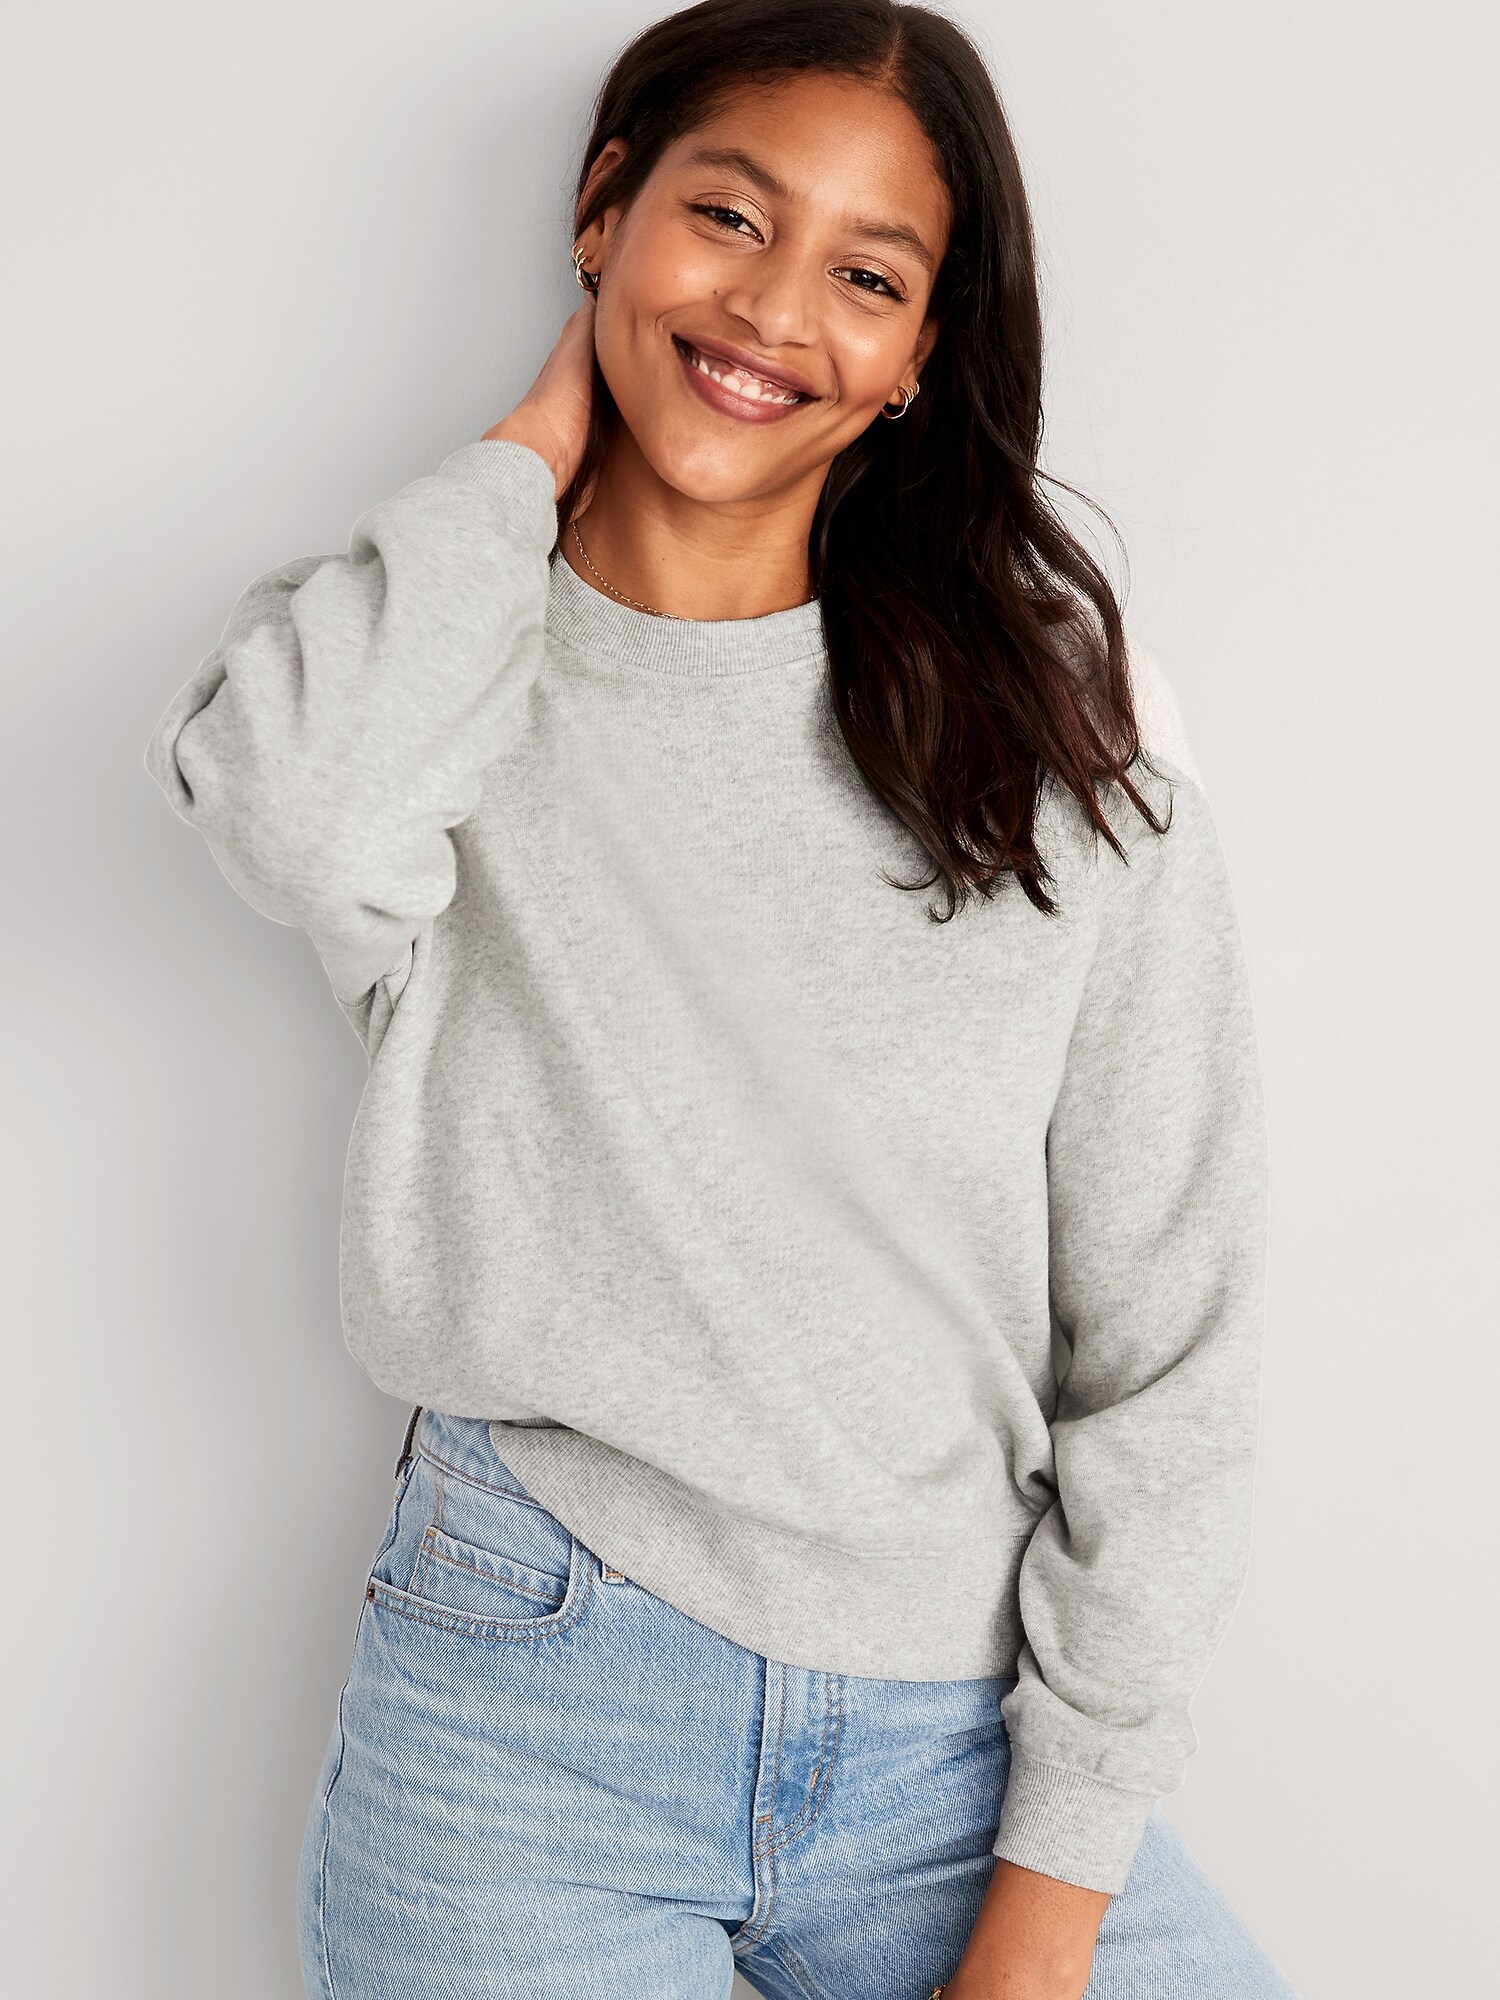 Heathered Vintage Fleece Sweatshirt for Women